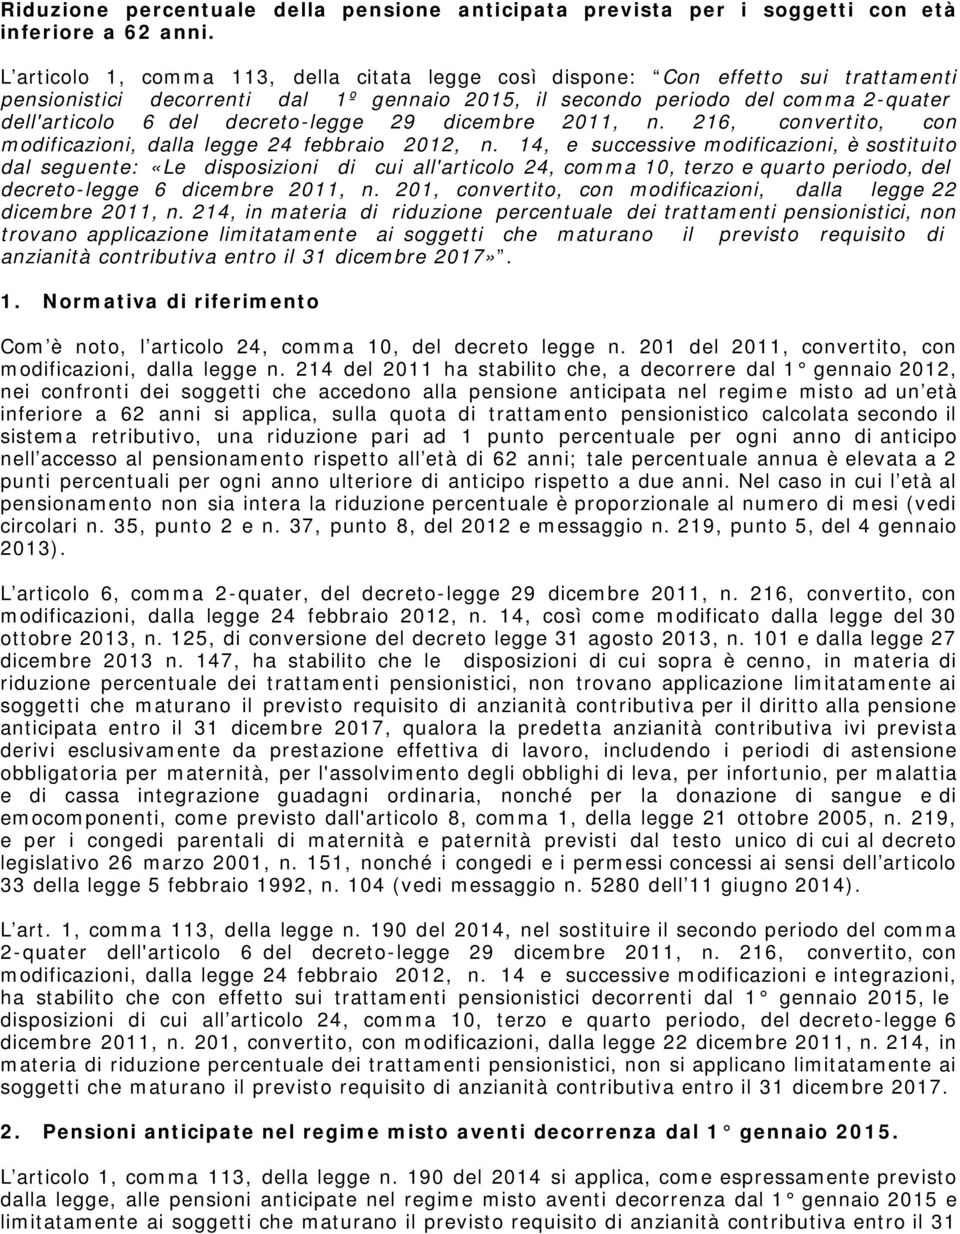 decreto-legge 29 dicembre 2011, n. 216, convertito, con modificazioni, dalla legge 24 febbraio 2012, n.